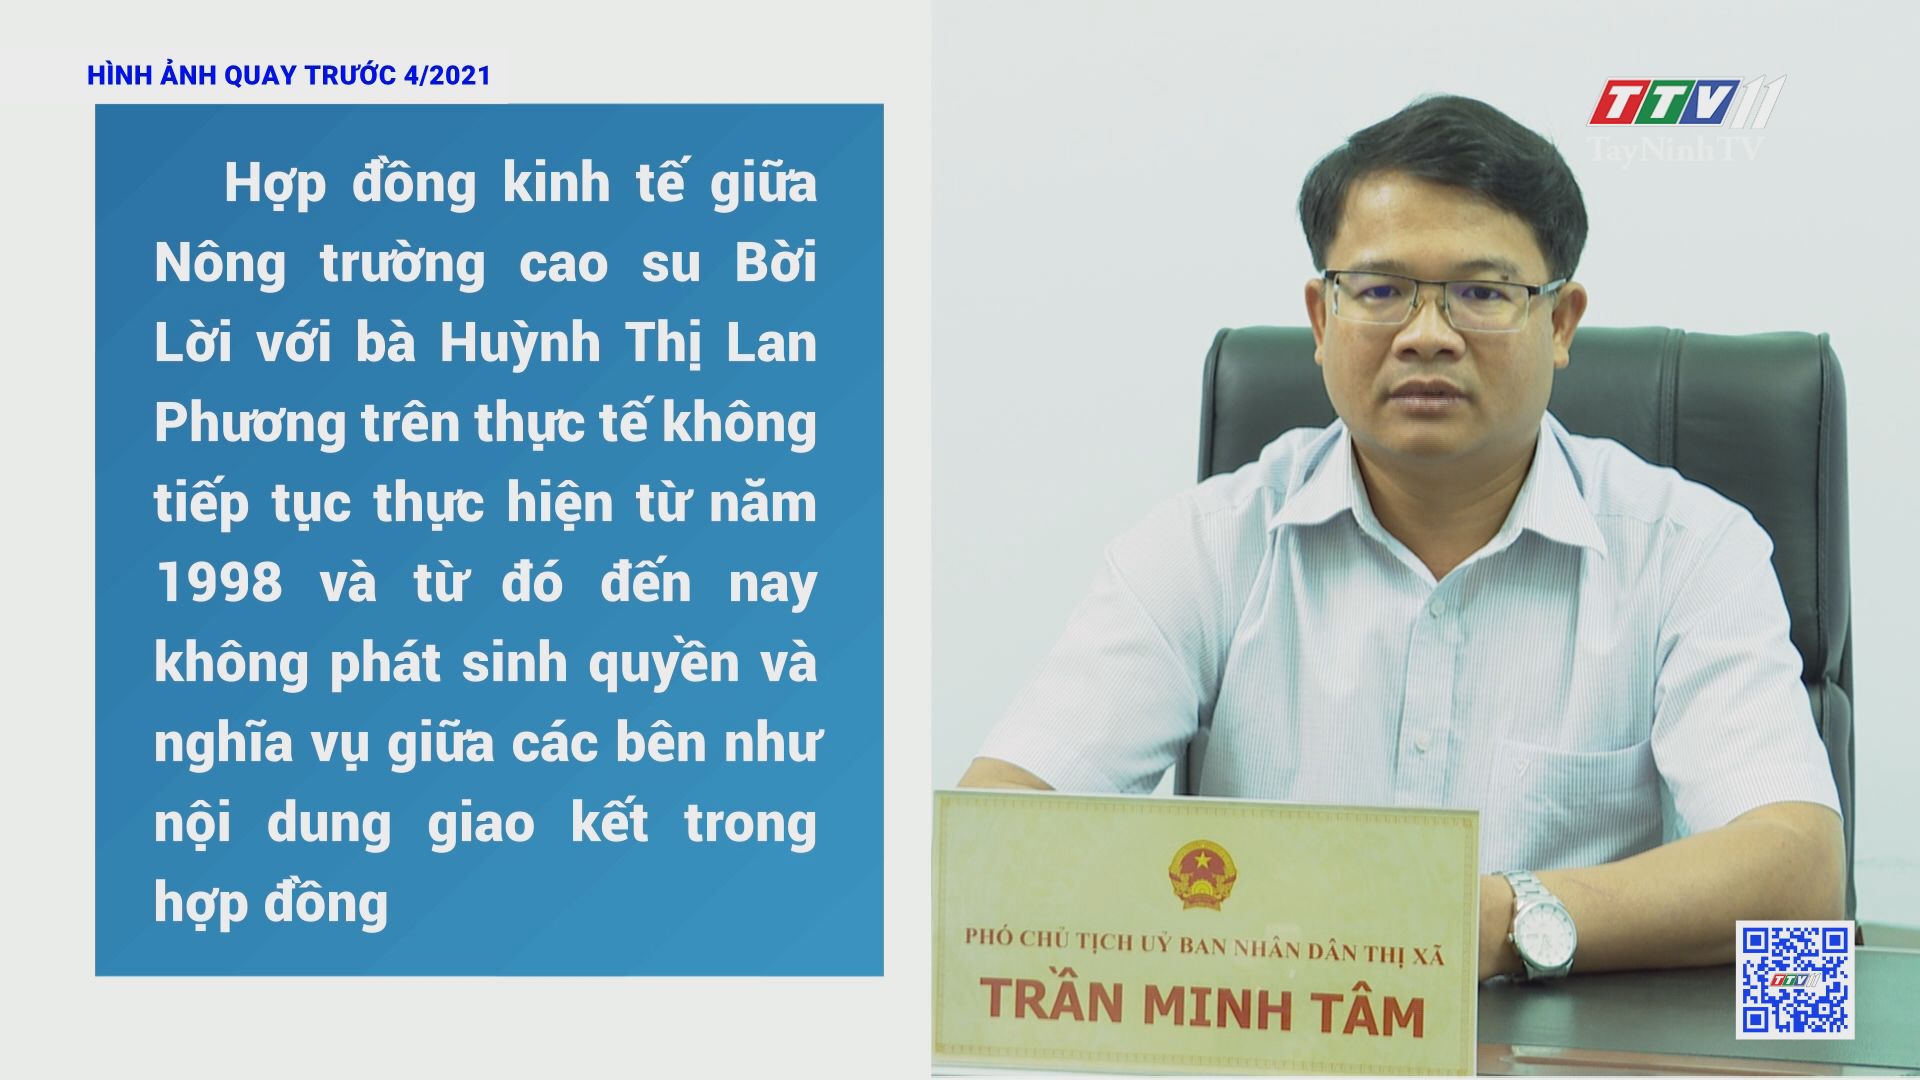 Hợp đồng kinh tế giữa nông trường cao su Bời Lời với bà Huỳnh Thị Lan Phương có đúng pháp luật? | CHÍNH SÁCH ĐẤT ĐAI | TayNinhTV